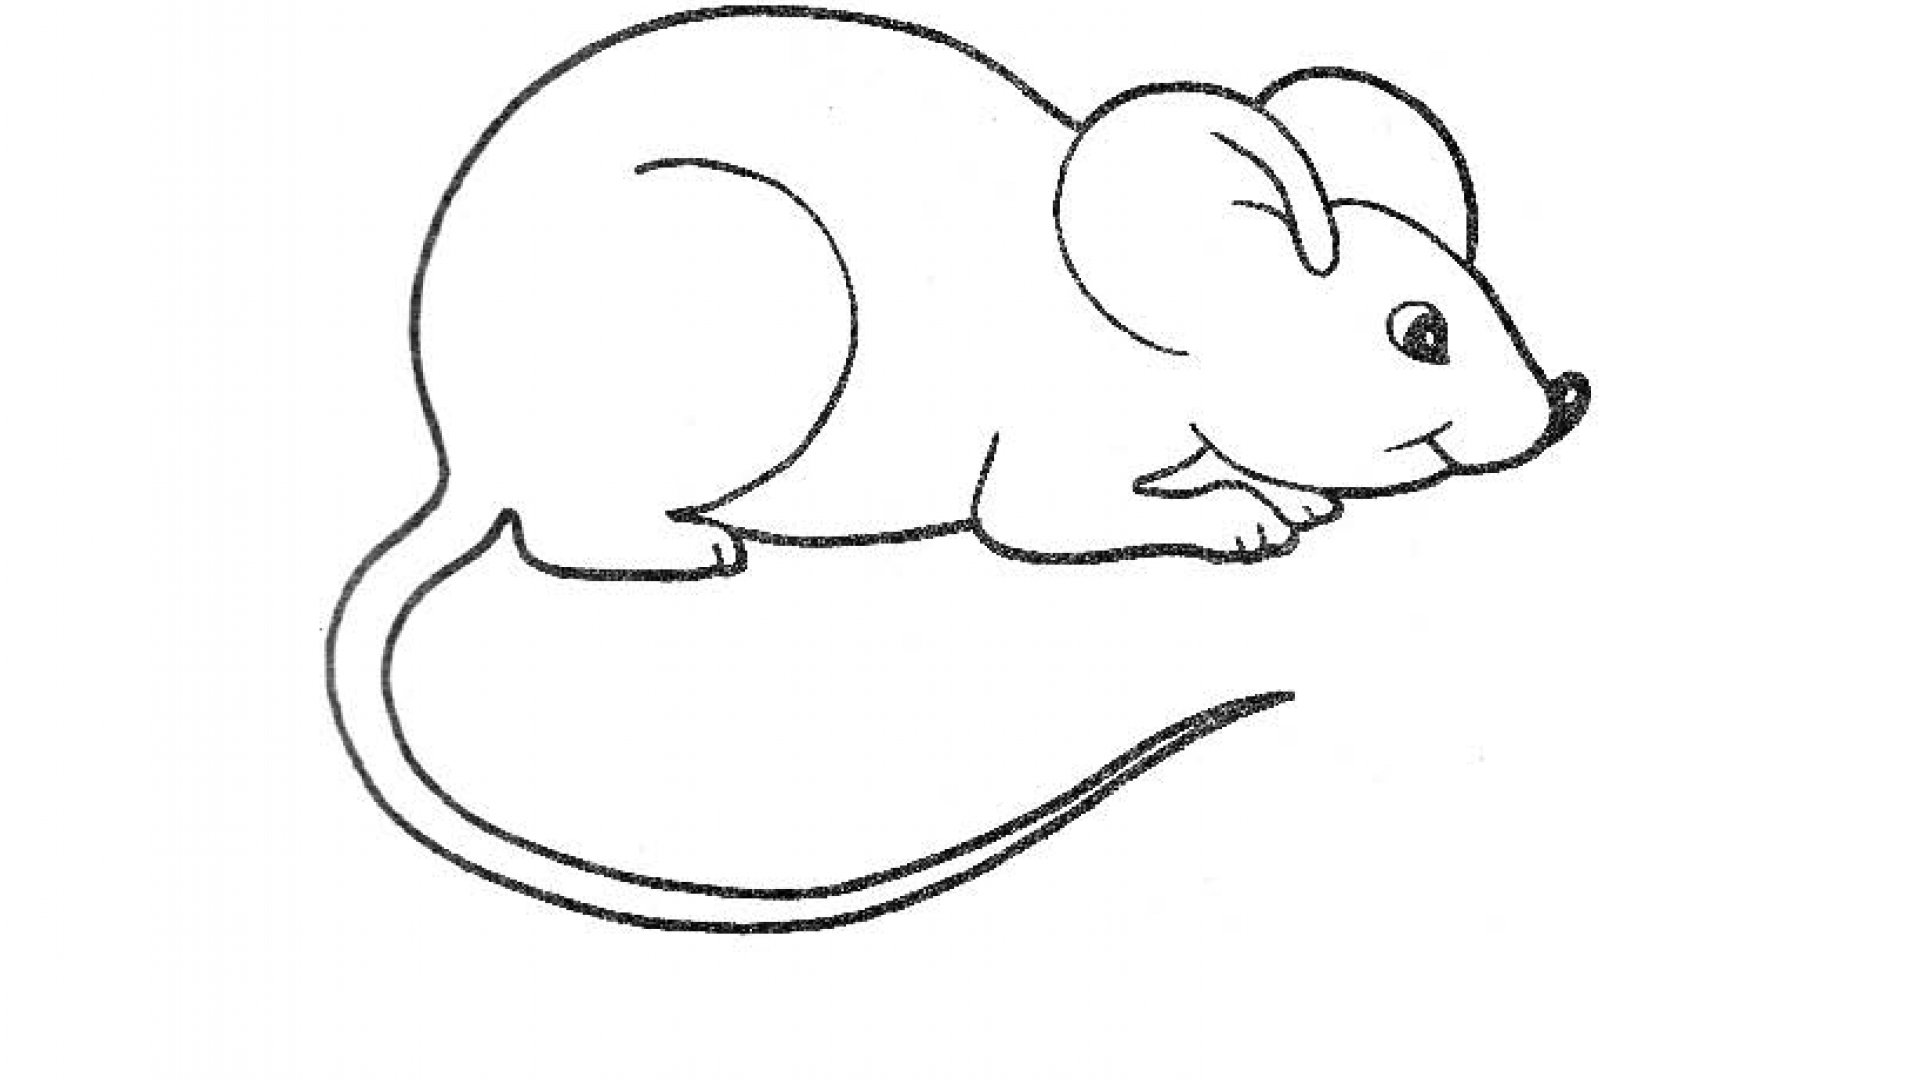 Мышка рисунок для детей карандашом